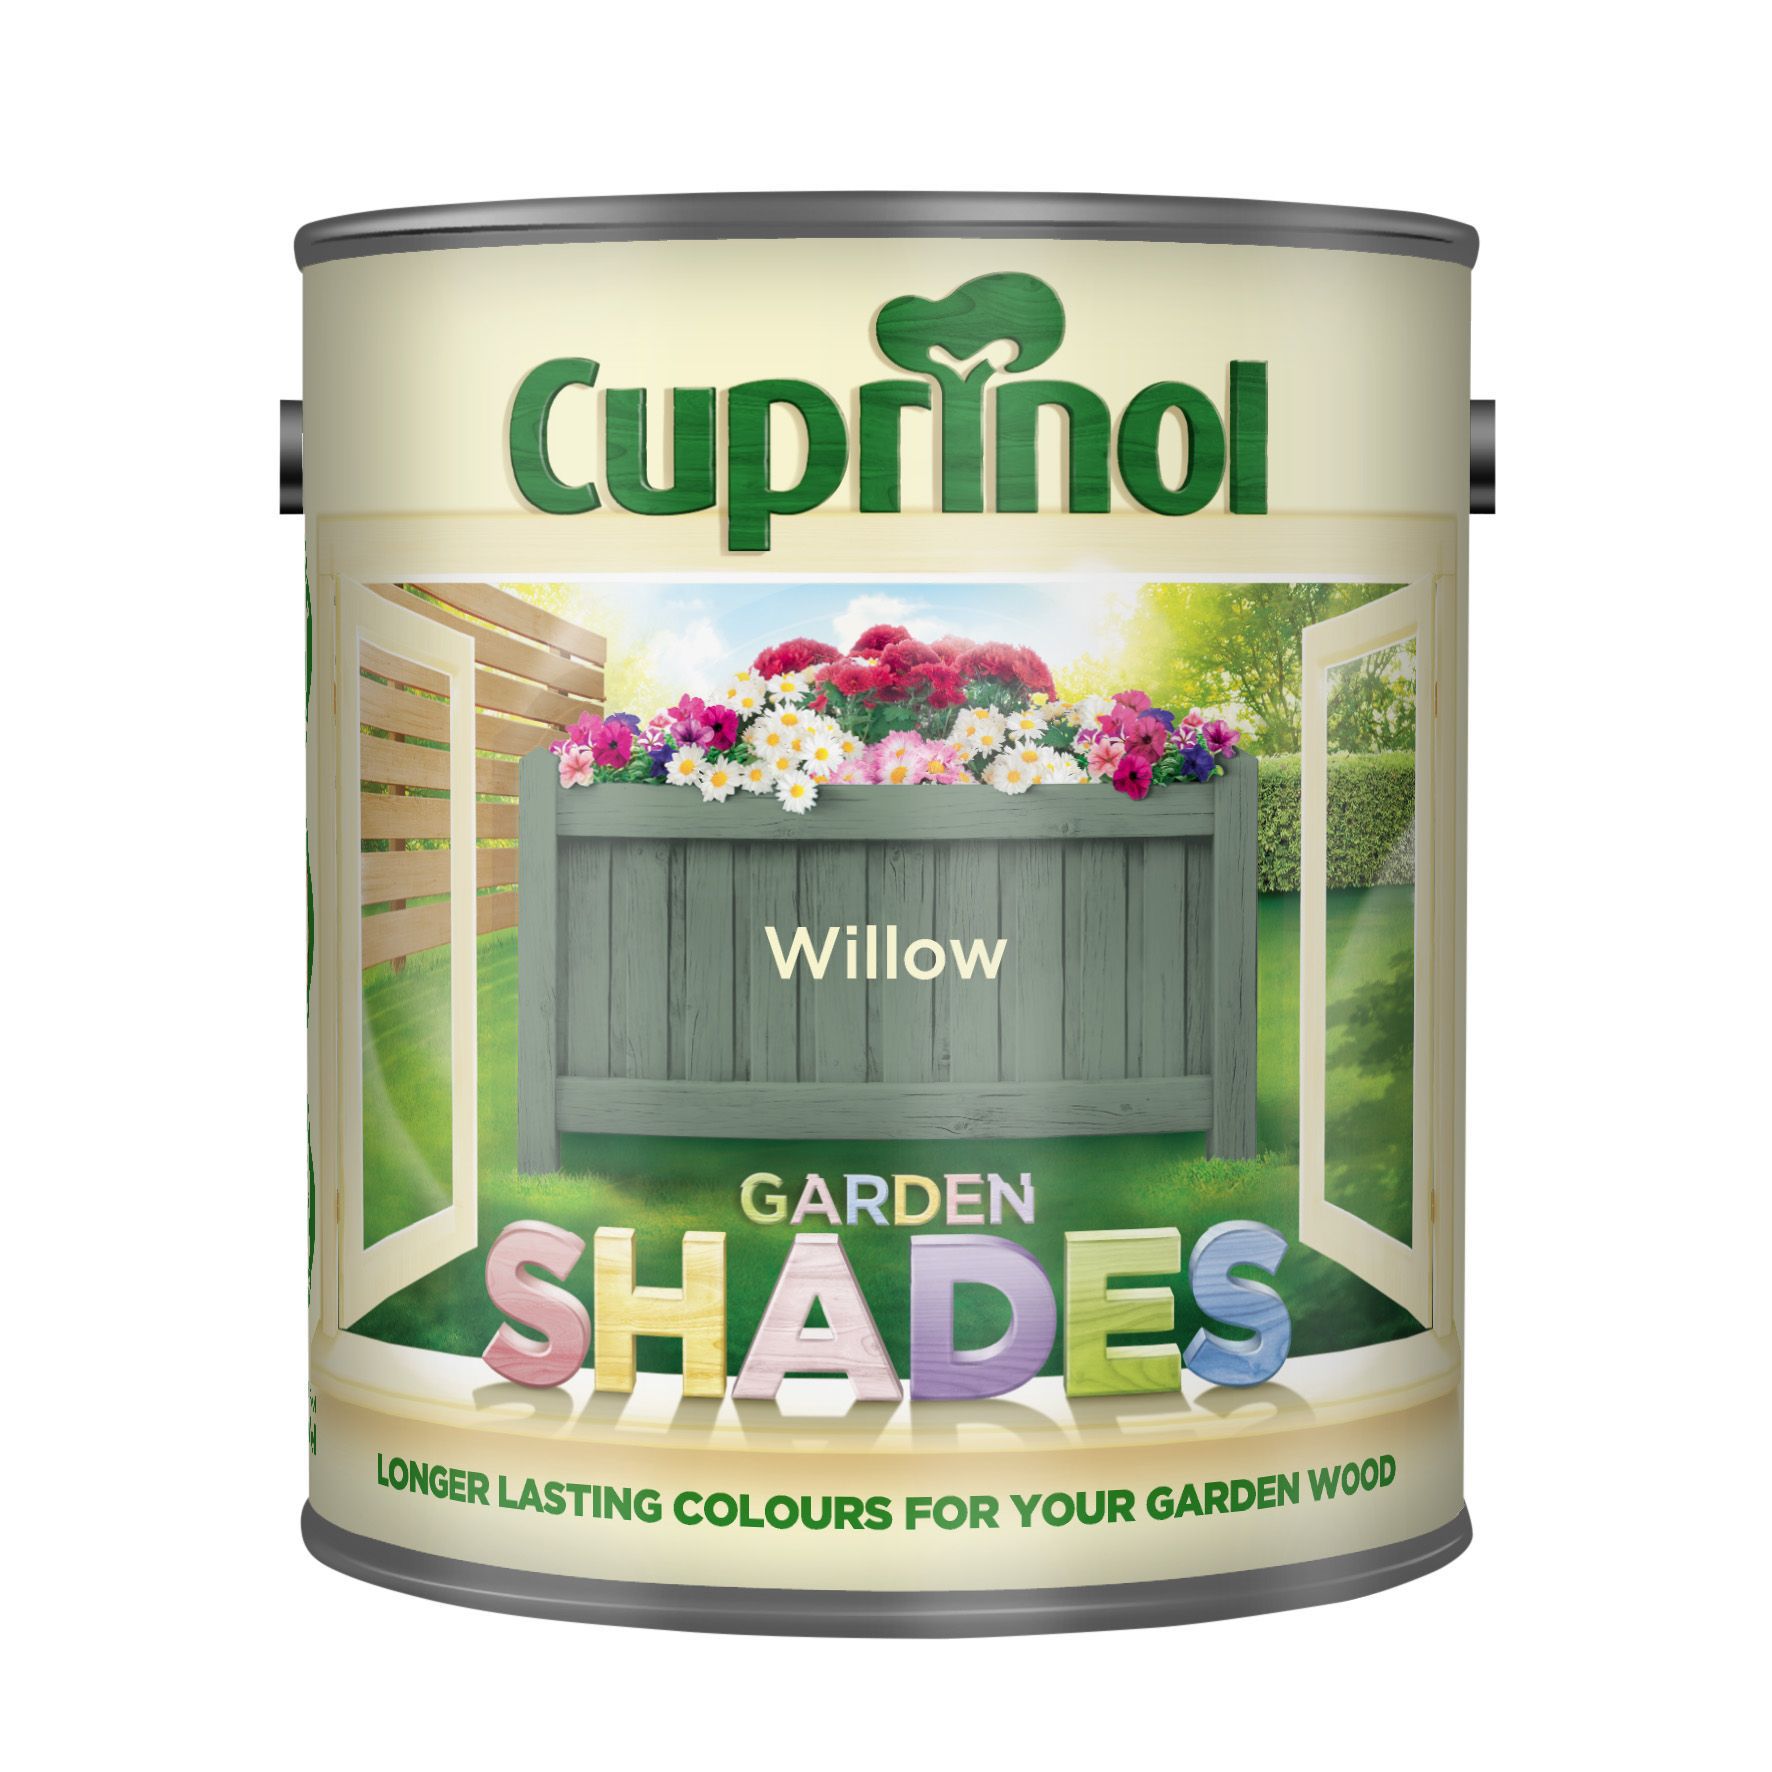 Cuprinol Garden shades Willow Matt Multi-surface Exterior Wood paint, 1L